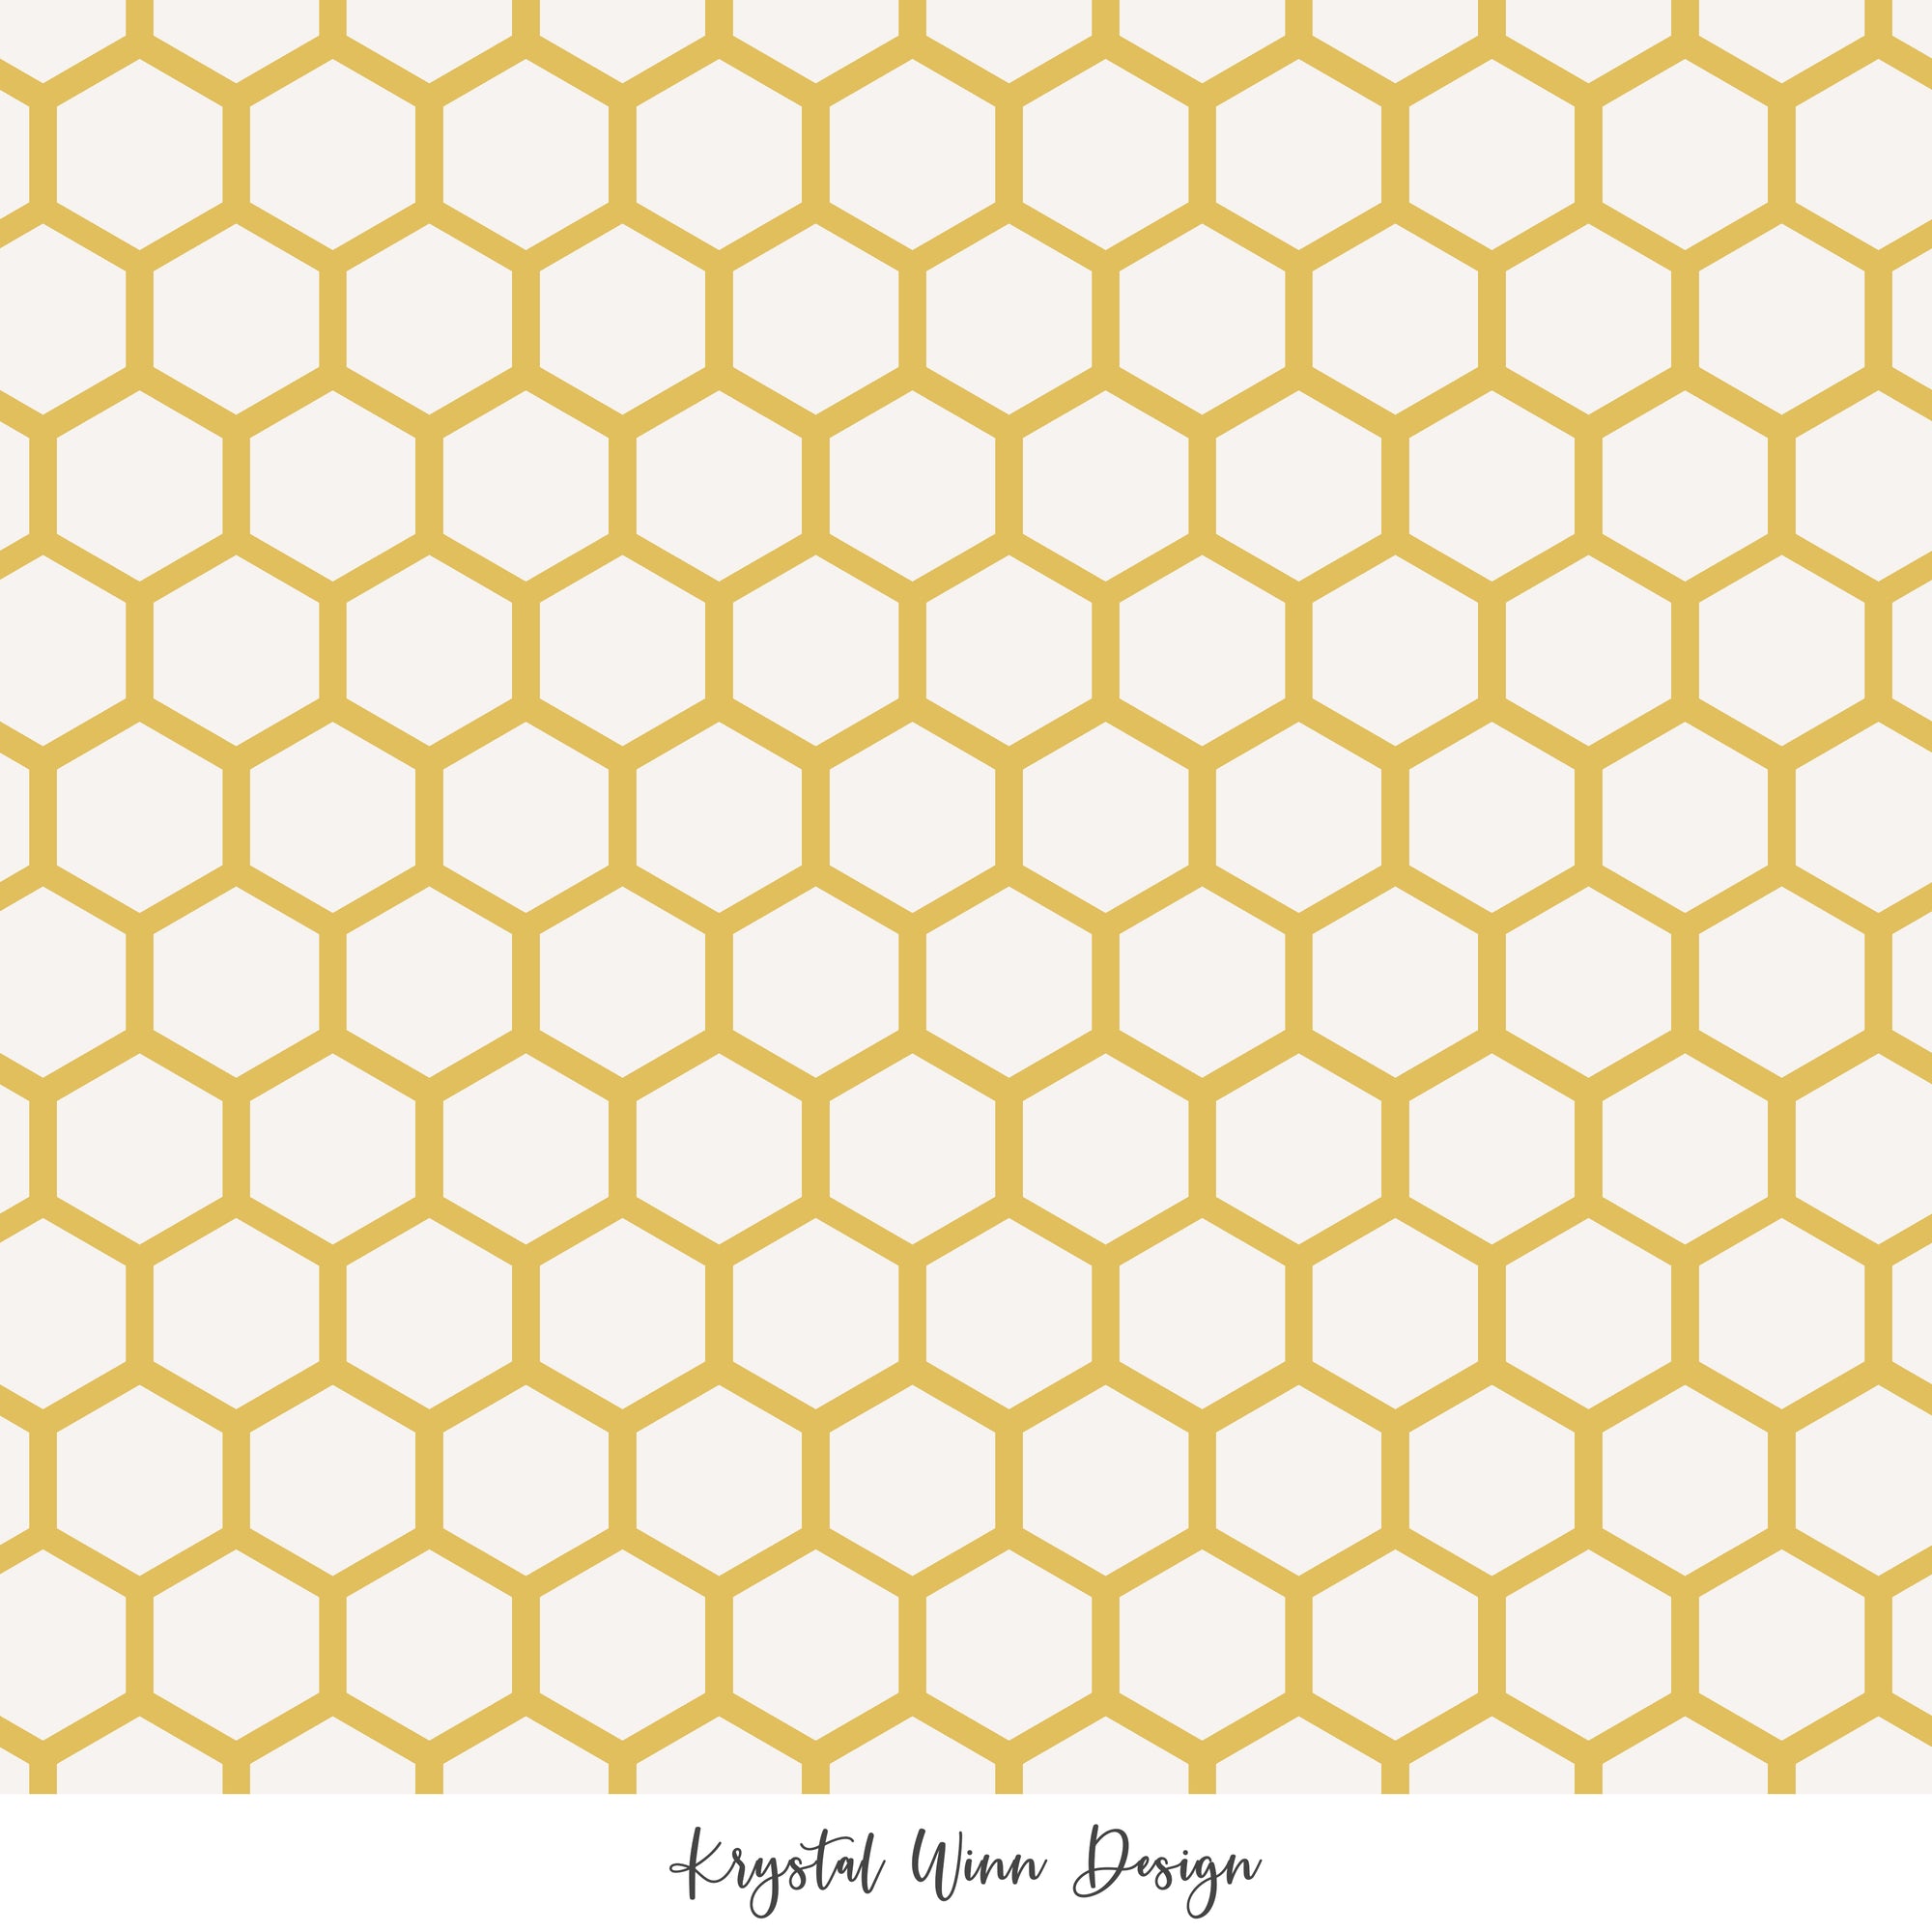 Bee Mine honeycombs golden